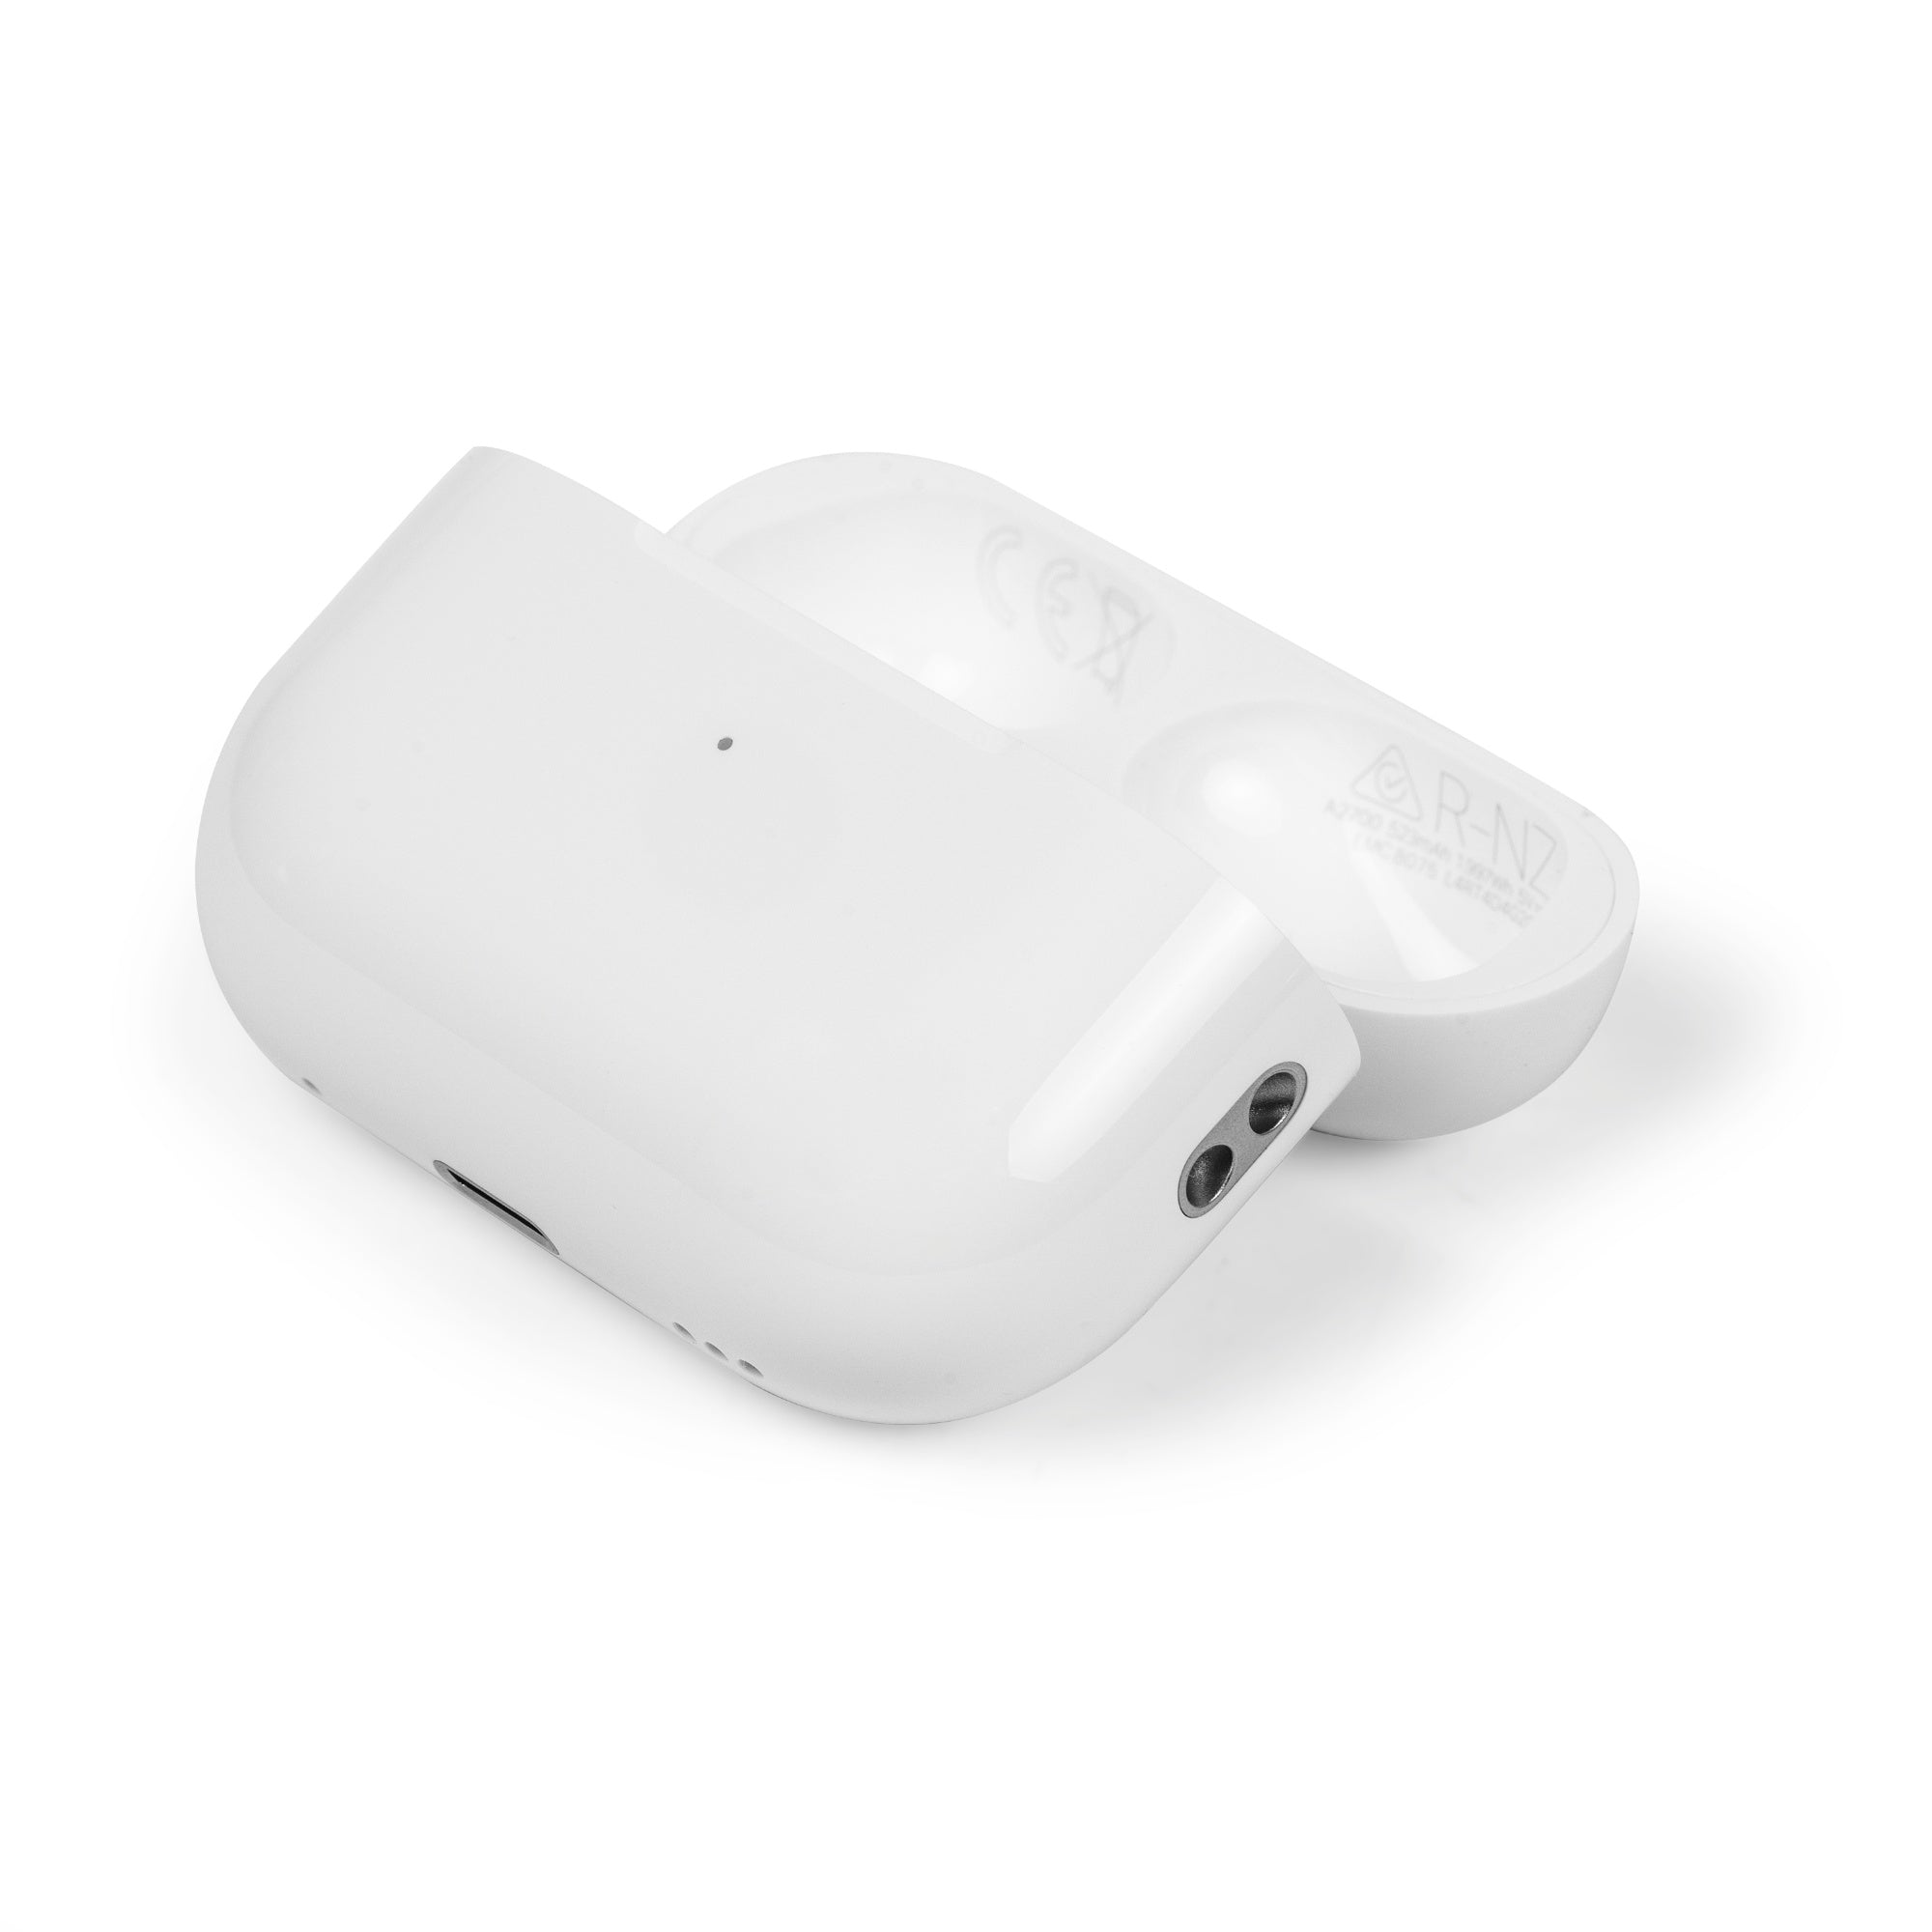 Apple Store : déjà une dragonne pour le boîtier des AirPods Pro 2